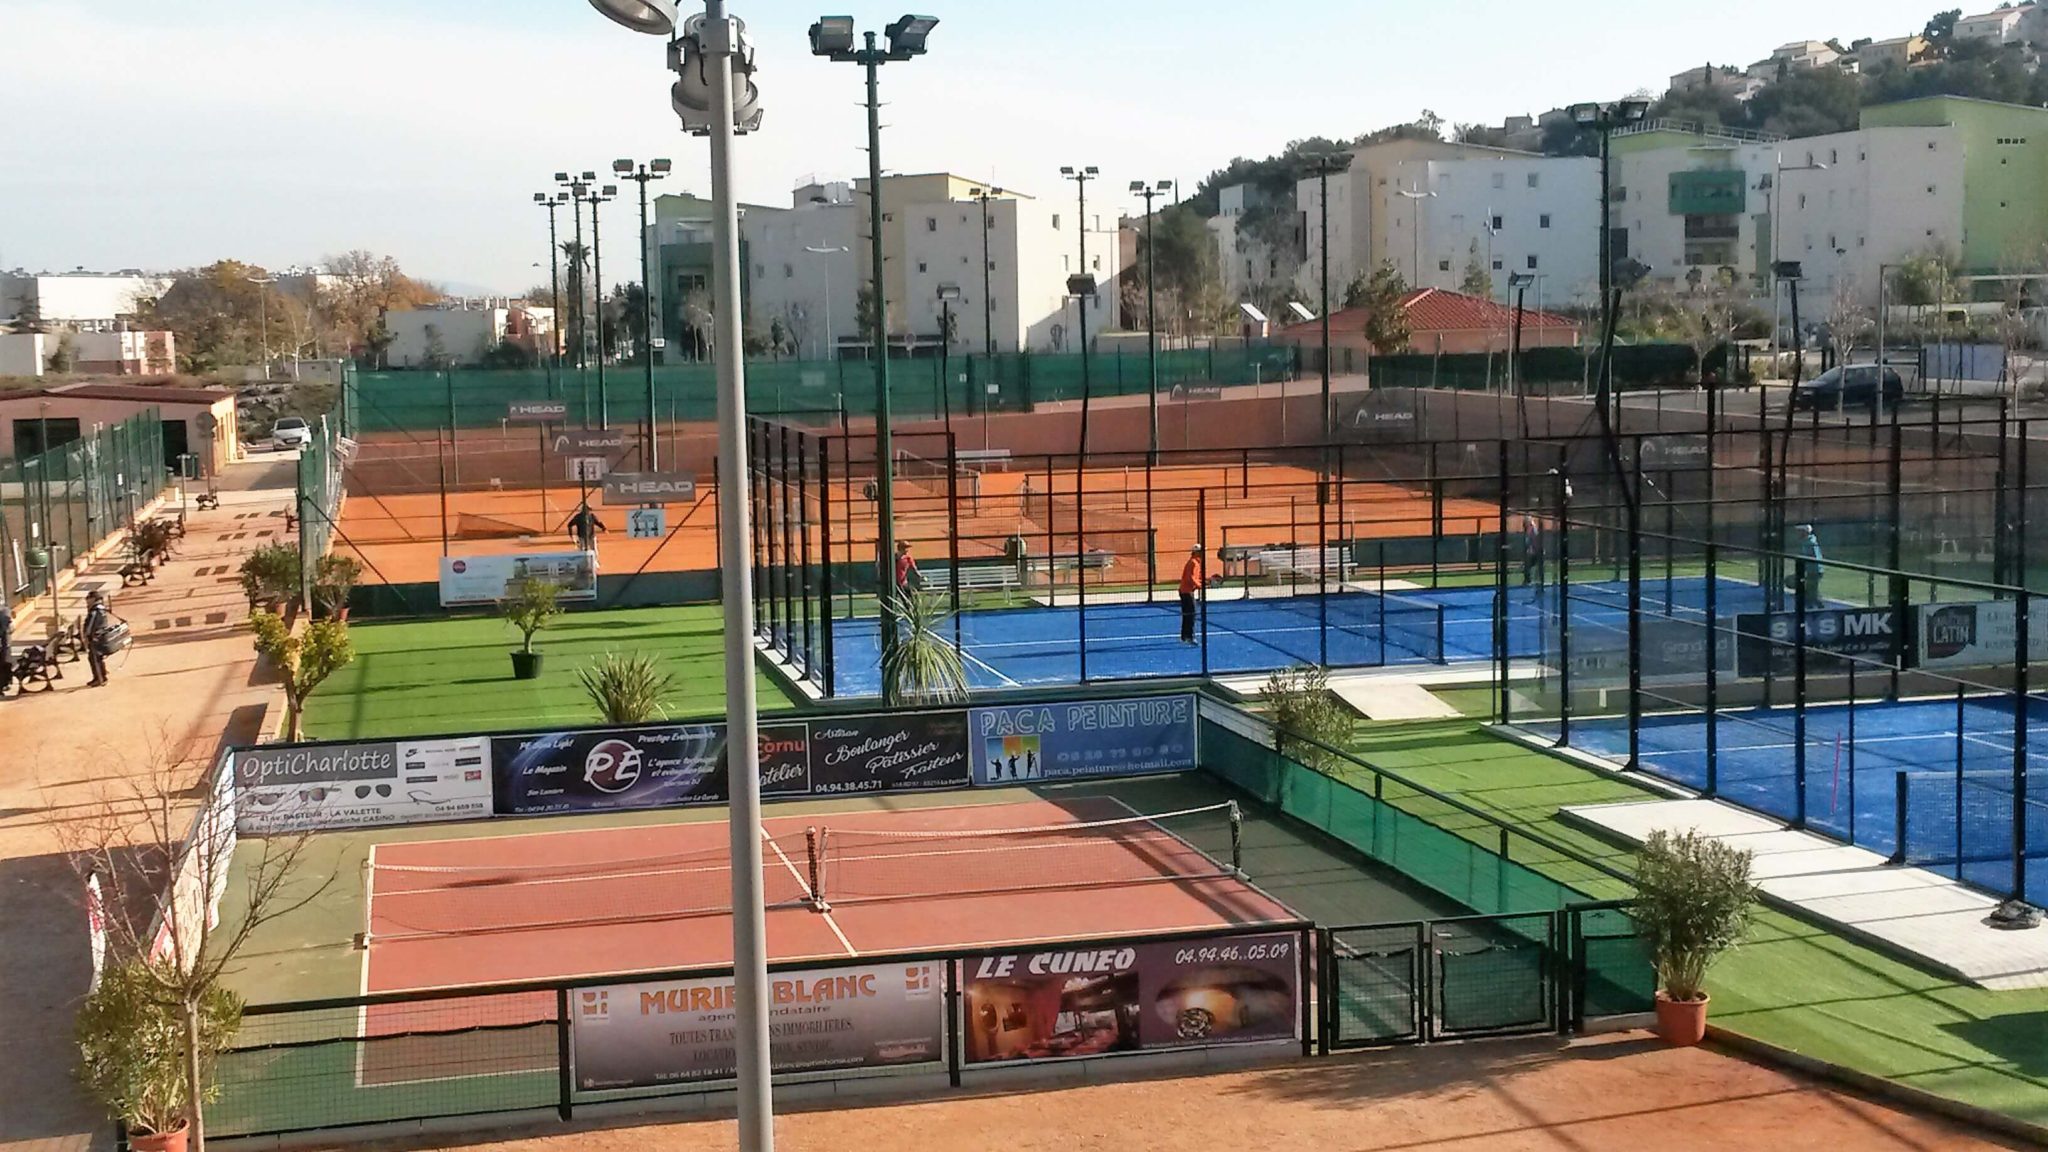 Klub tenisowy Toulonnais w trybie rywalizacji padel